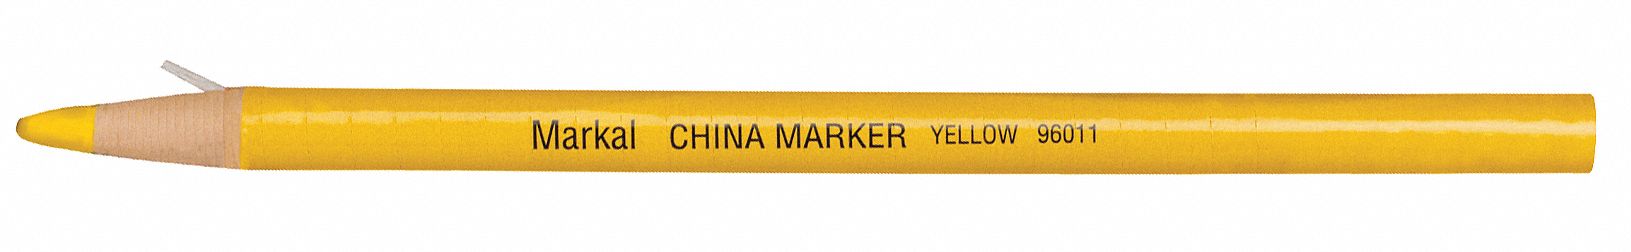 China Marker - Yellow